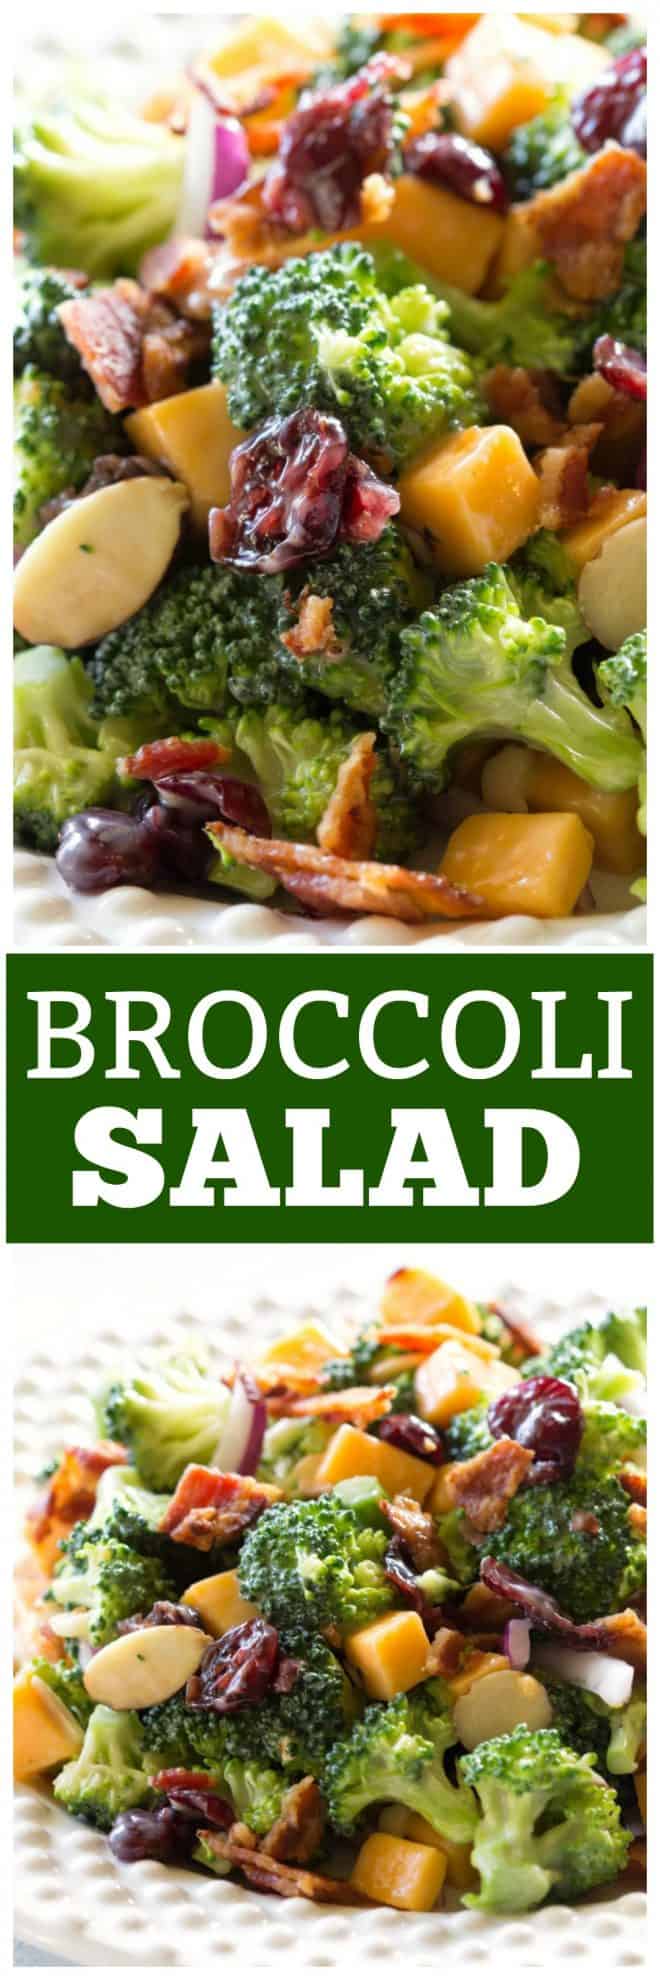 Broccoli Salad | The Girl Who Ate Everything